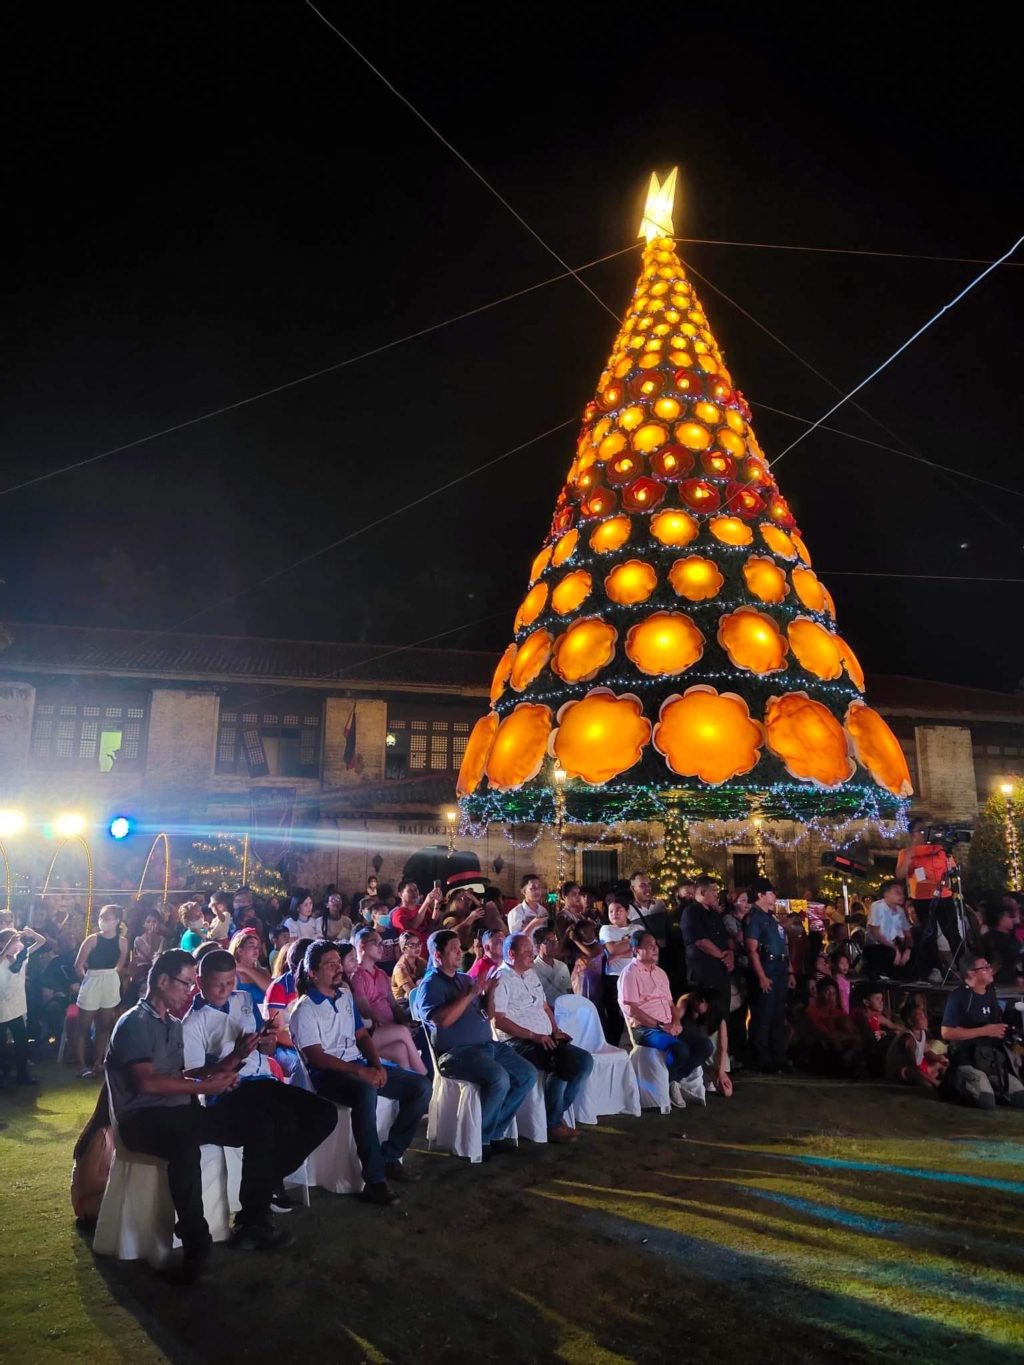 Minglanilla, Argao towns light Christmas trees of hope